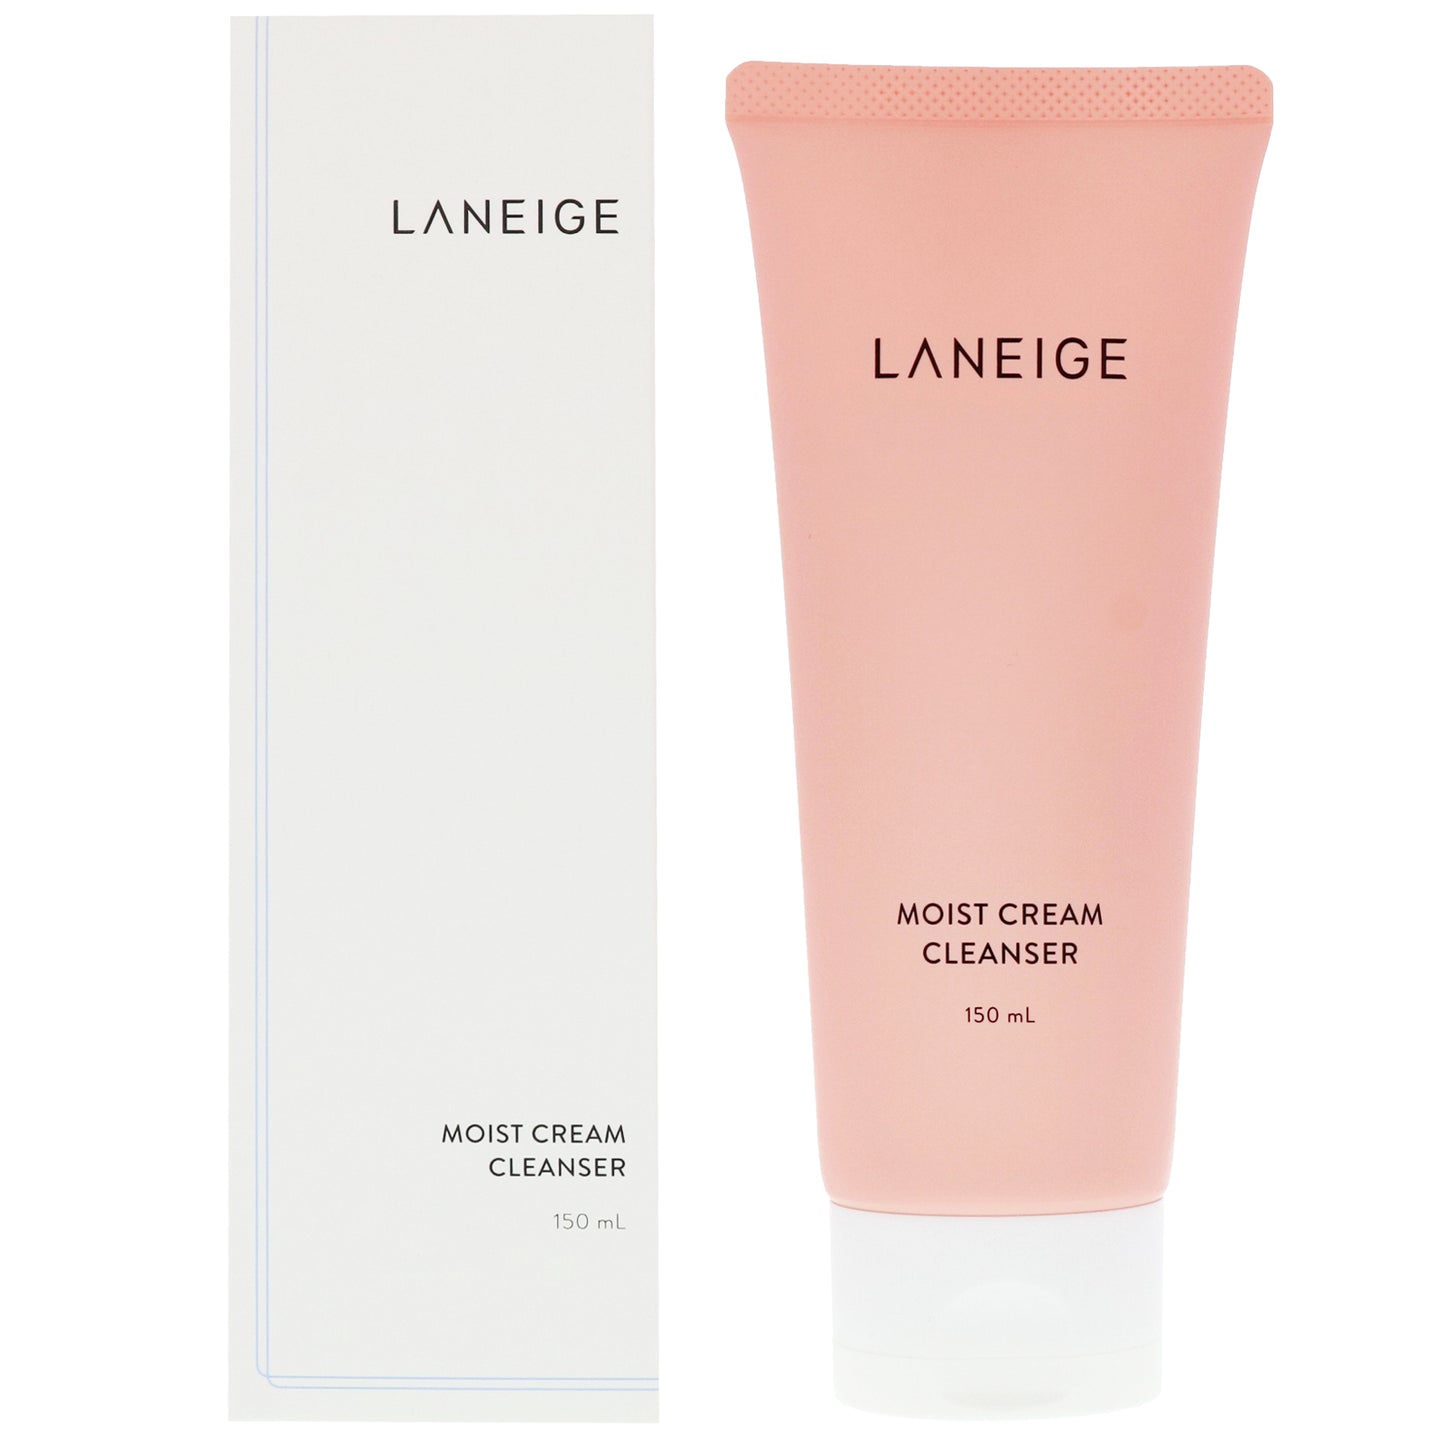 LANEIGE - Moist Cream Cleanser 150ml